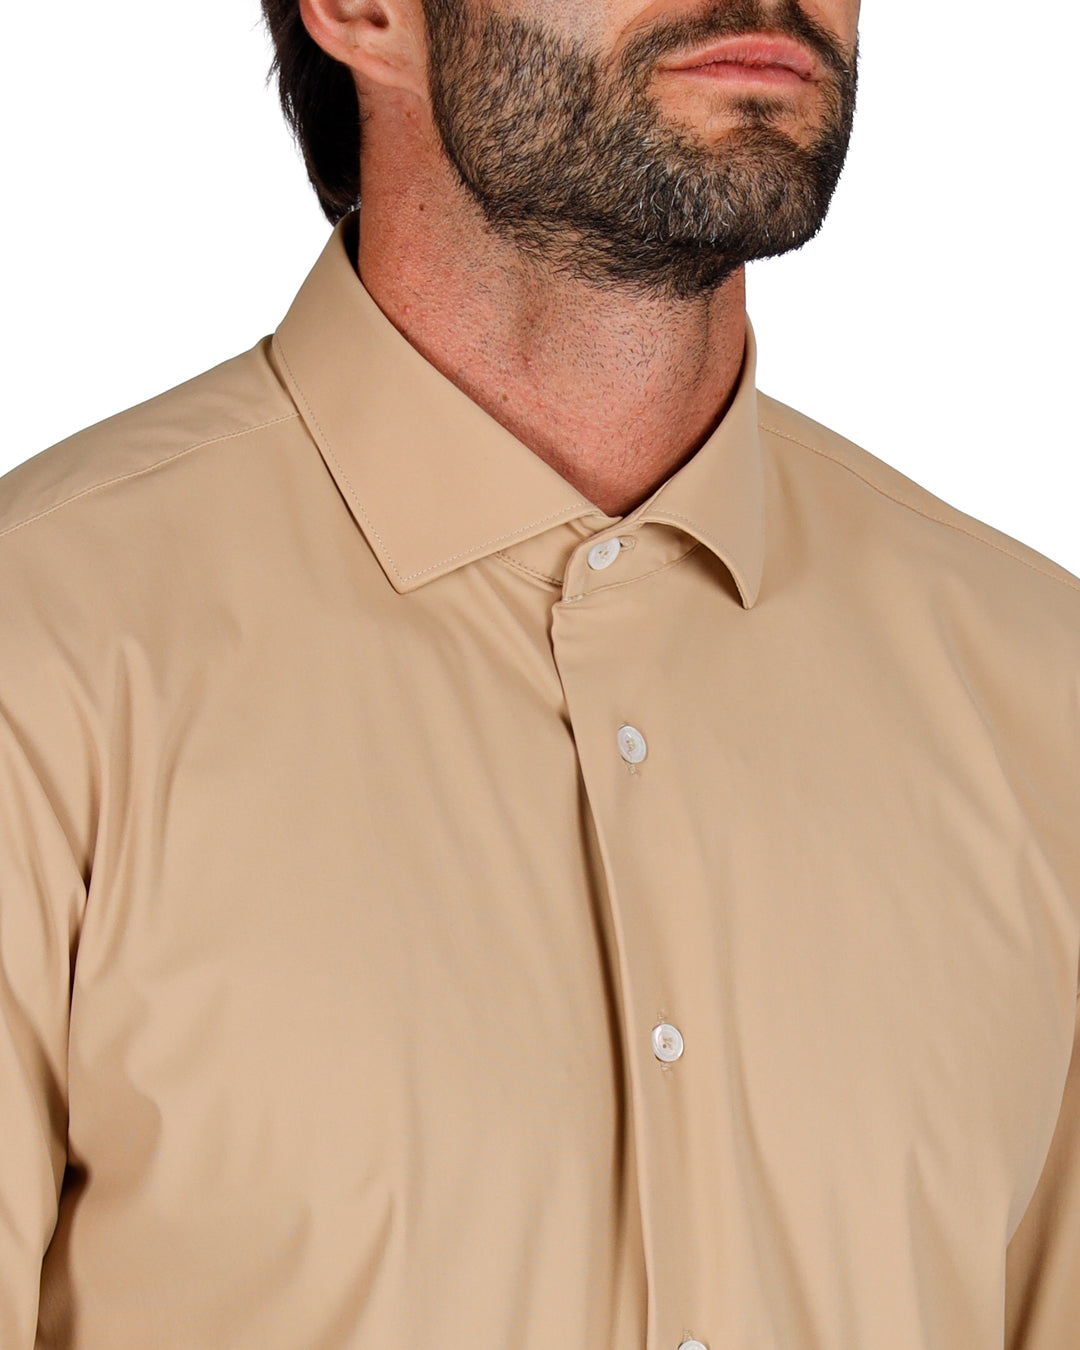 Teck - camicia tecnica classica cammello